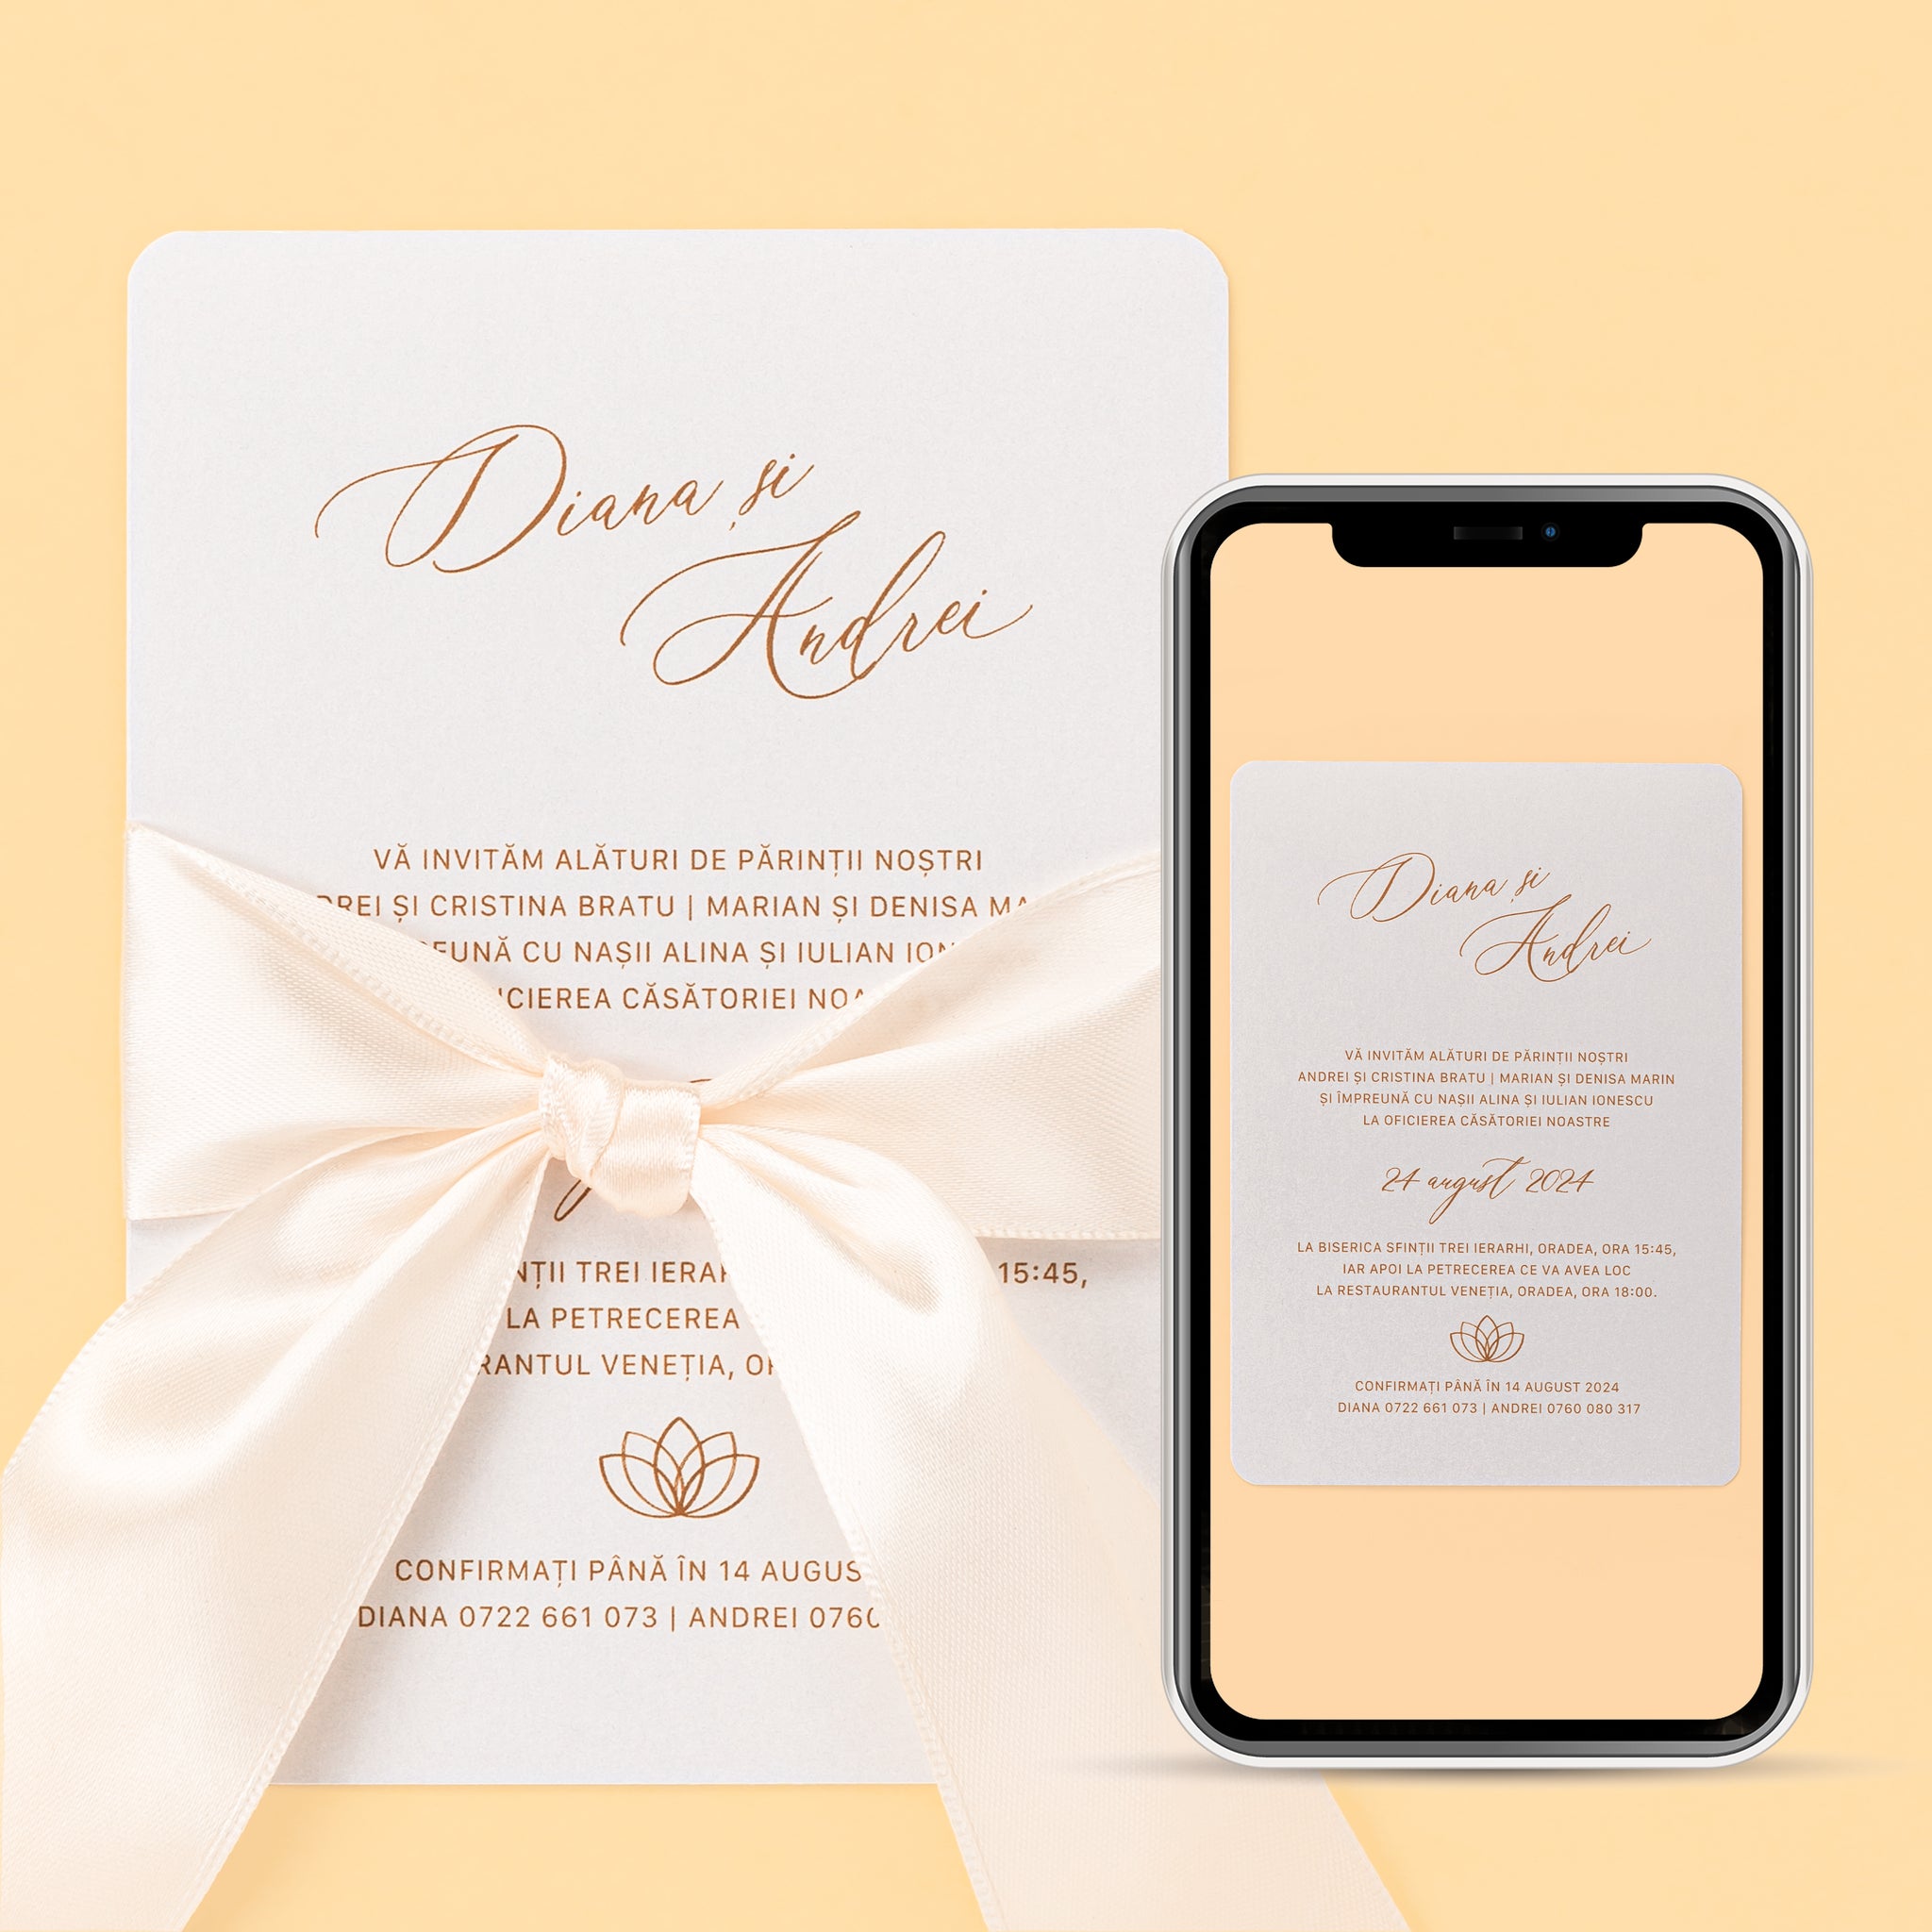 Ornate aureum, invitație nuntă, digital